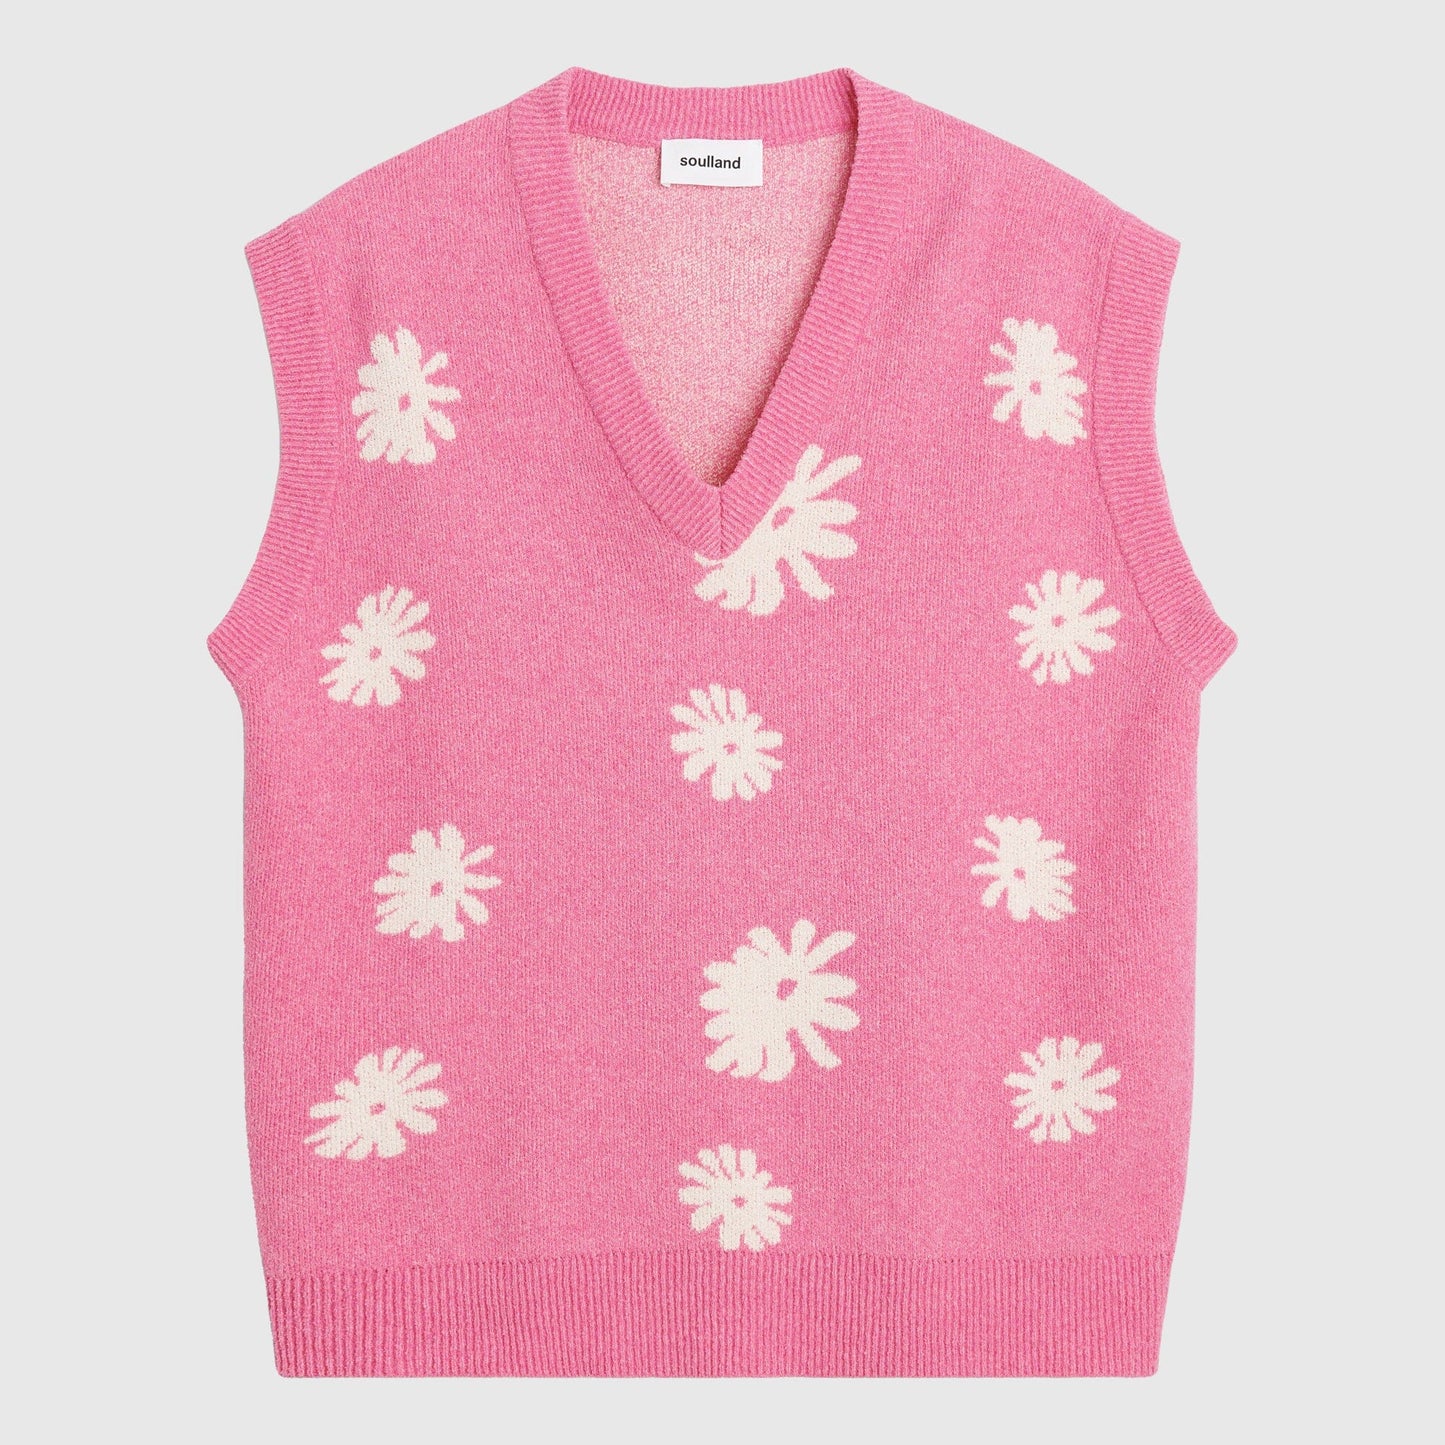 Soulland Kieran Vest - Pink Multi Knitwear Soulland 